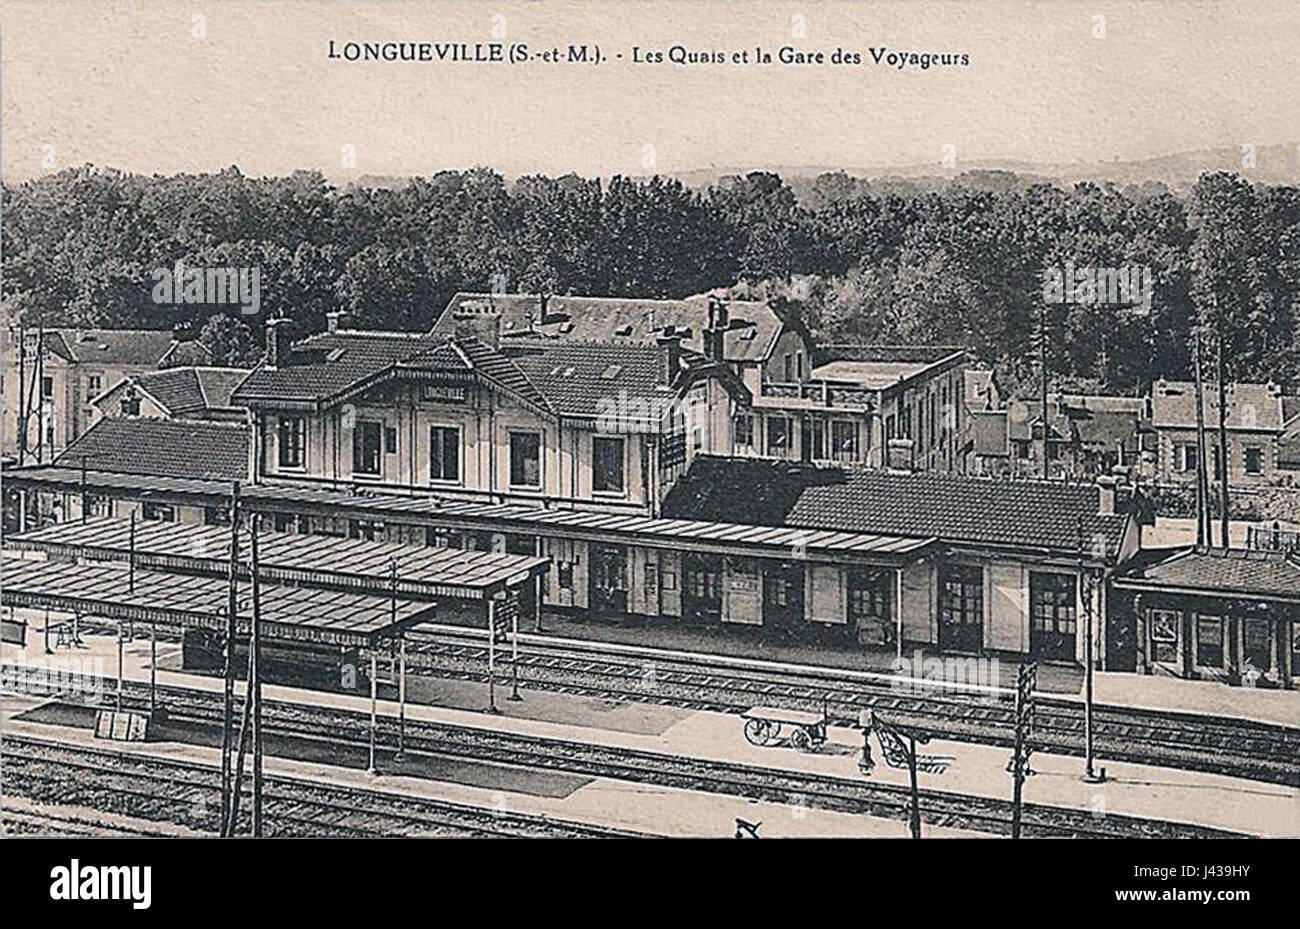 Longueville les quais et la gare des voyageurs Foto Stock